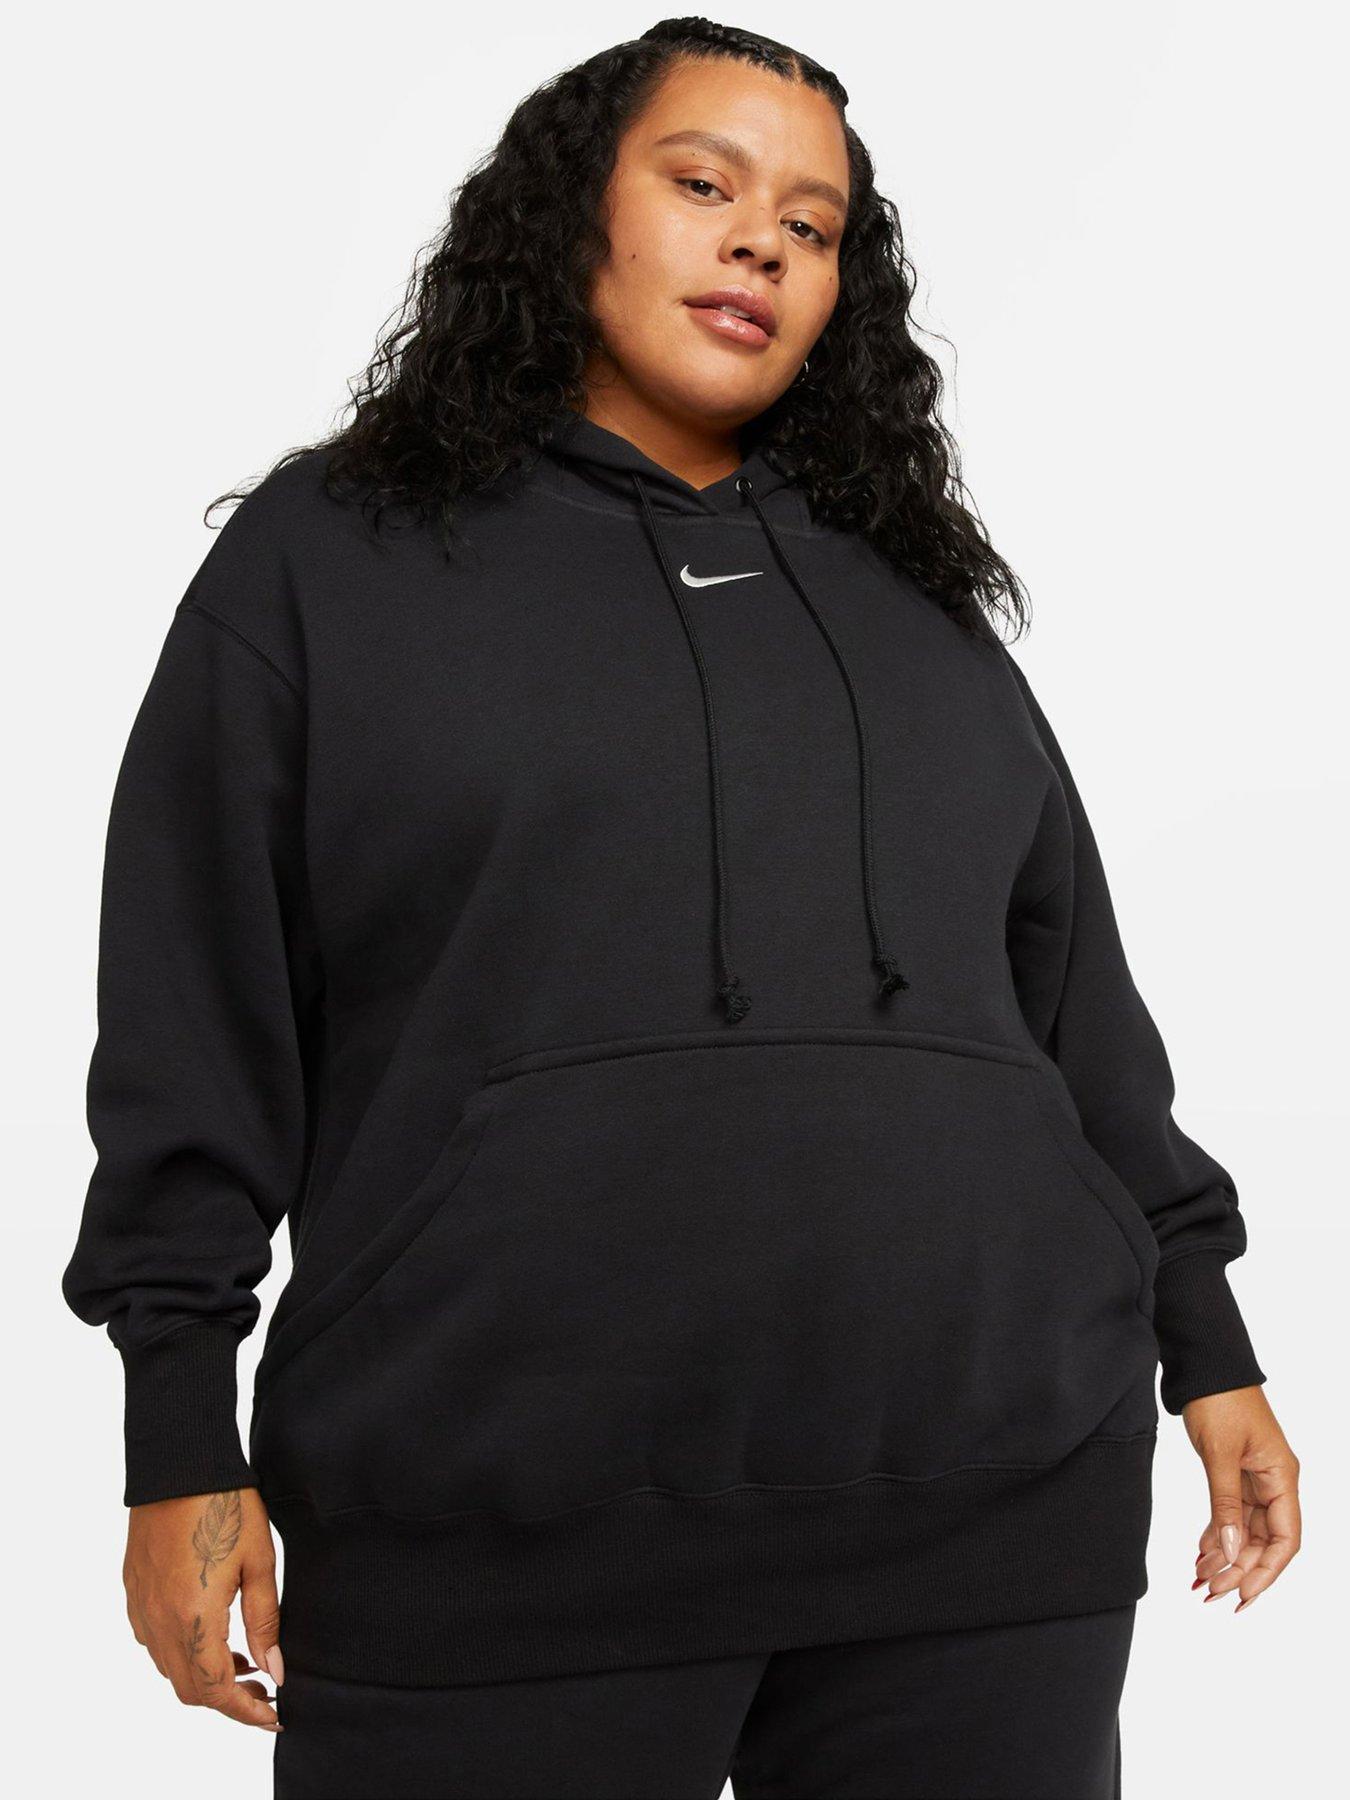 Nike Women's Fleece Top Plus Size Nike Pro Get Fit Funnel Neck Sweater